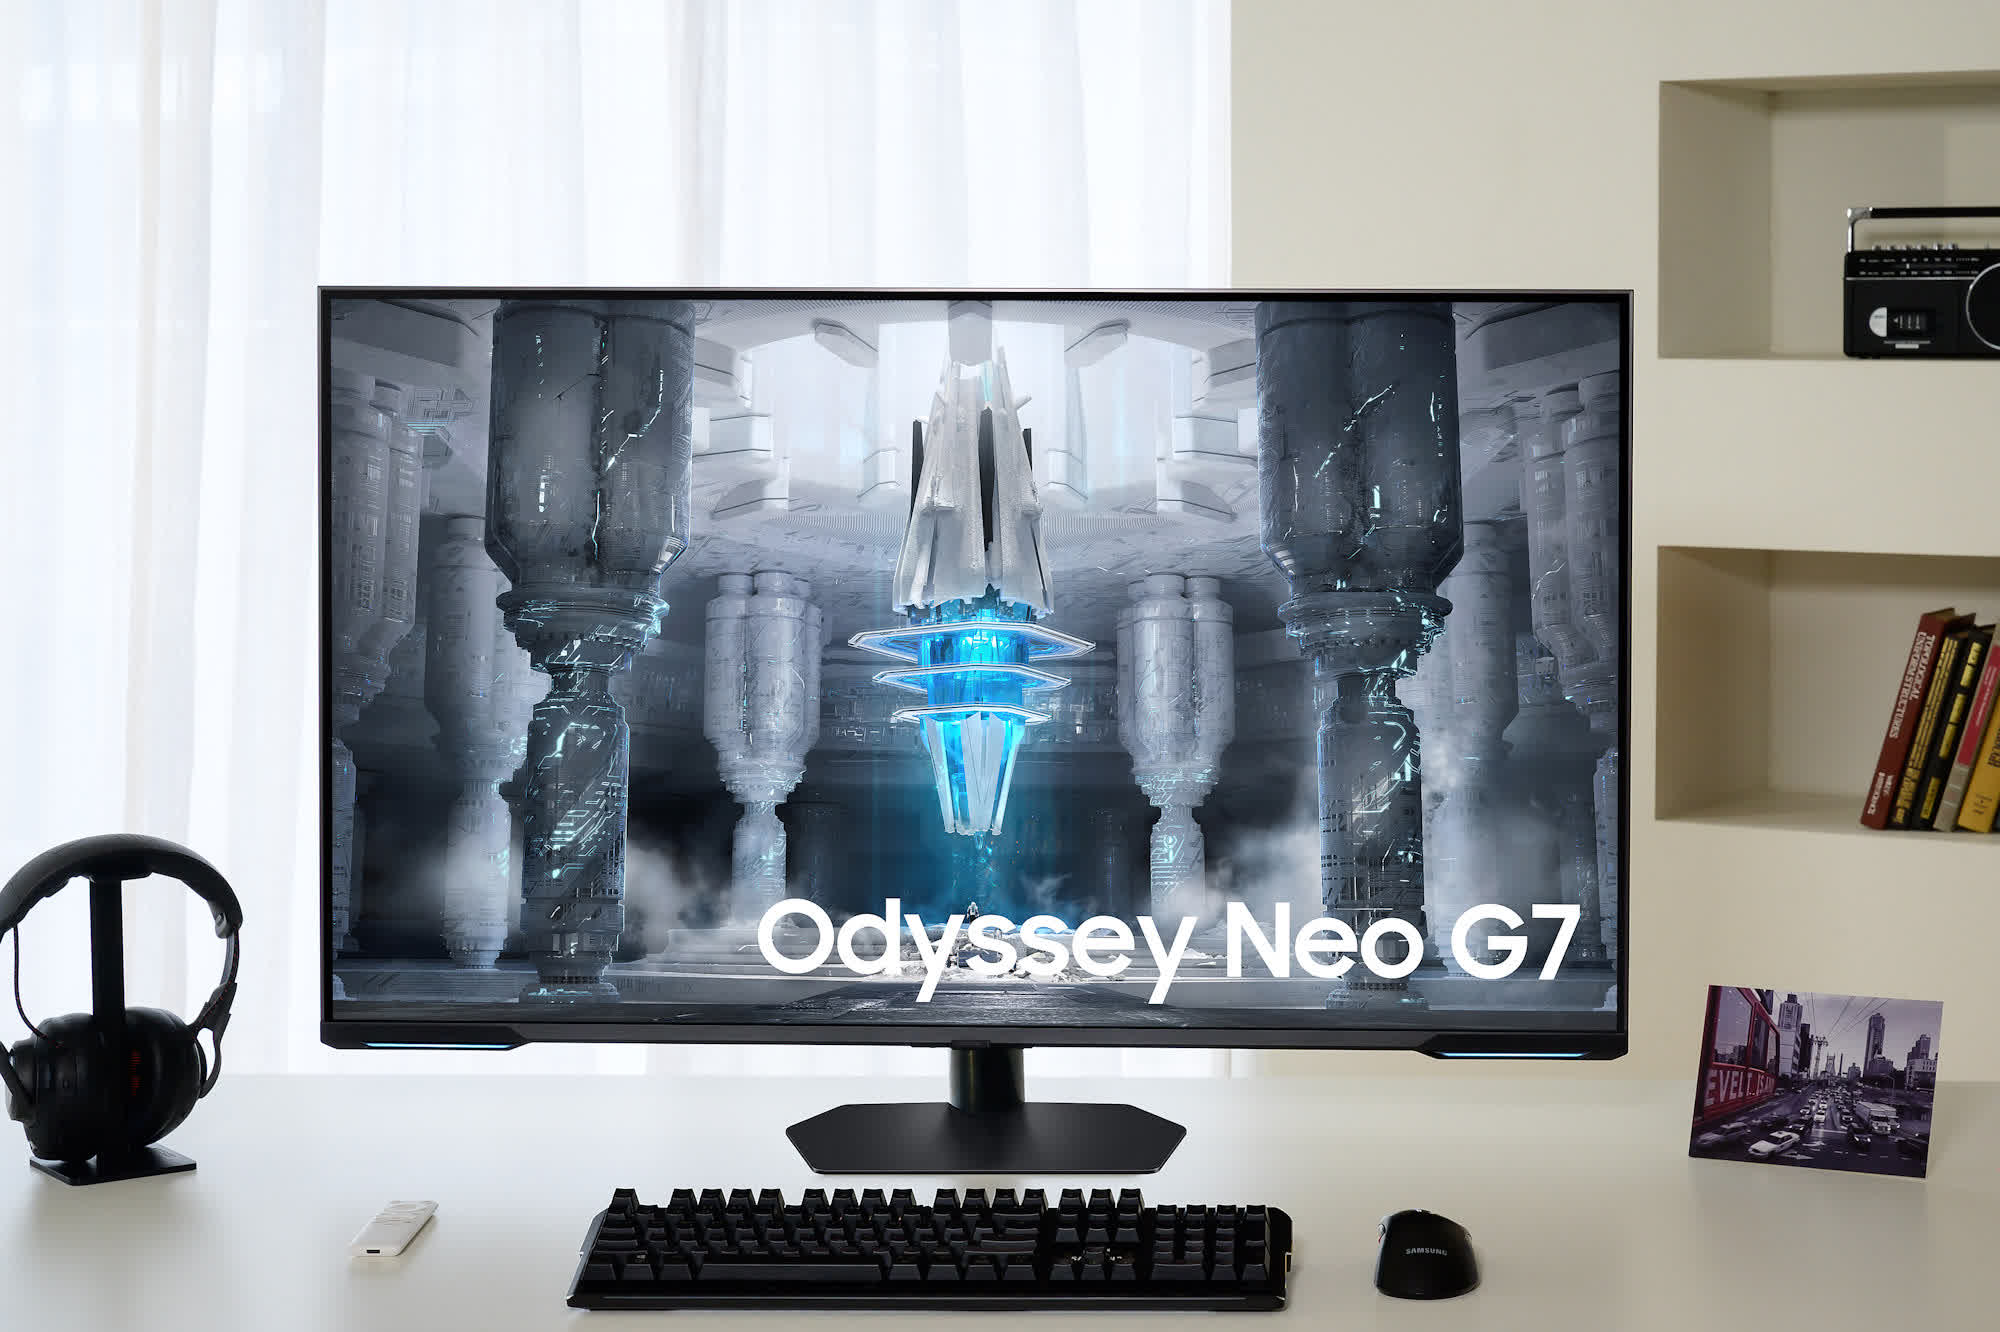 El monitor Samsung Odyssey Neo G7 4K UHD de 144 Hz sale a la venta por 1000 dólares